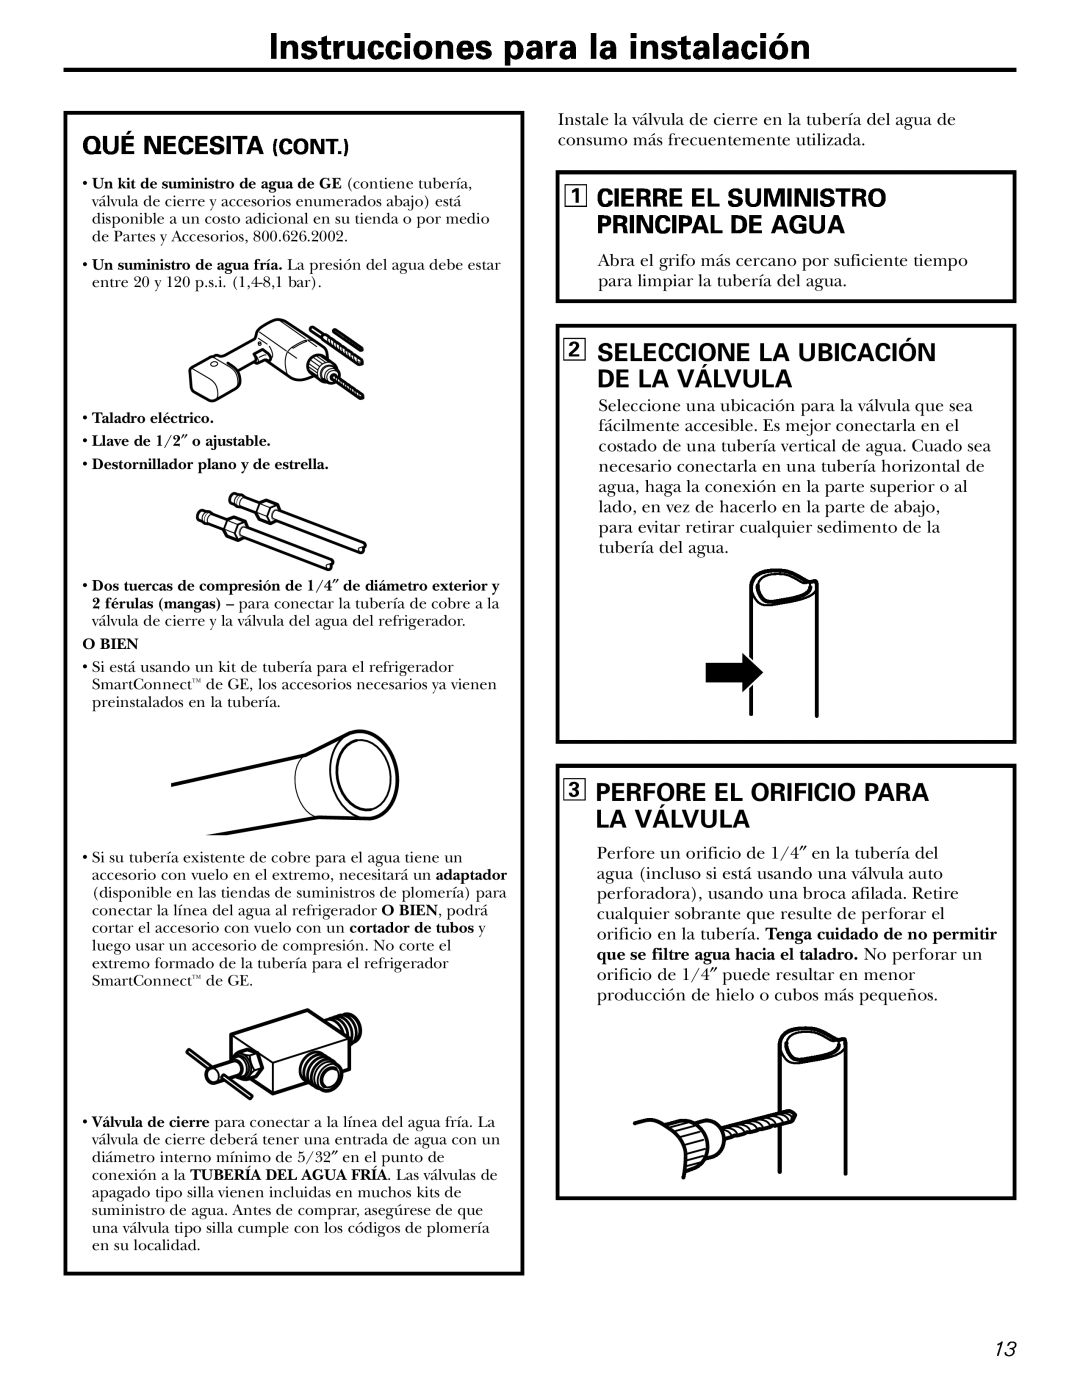 Americana Appliances 16, 18, 17 Instrucciones para la instalación, Qué Necesita Cont, Seleccione La Ubicación De La Válvula 